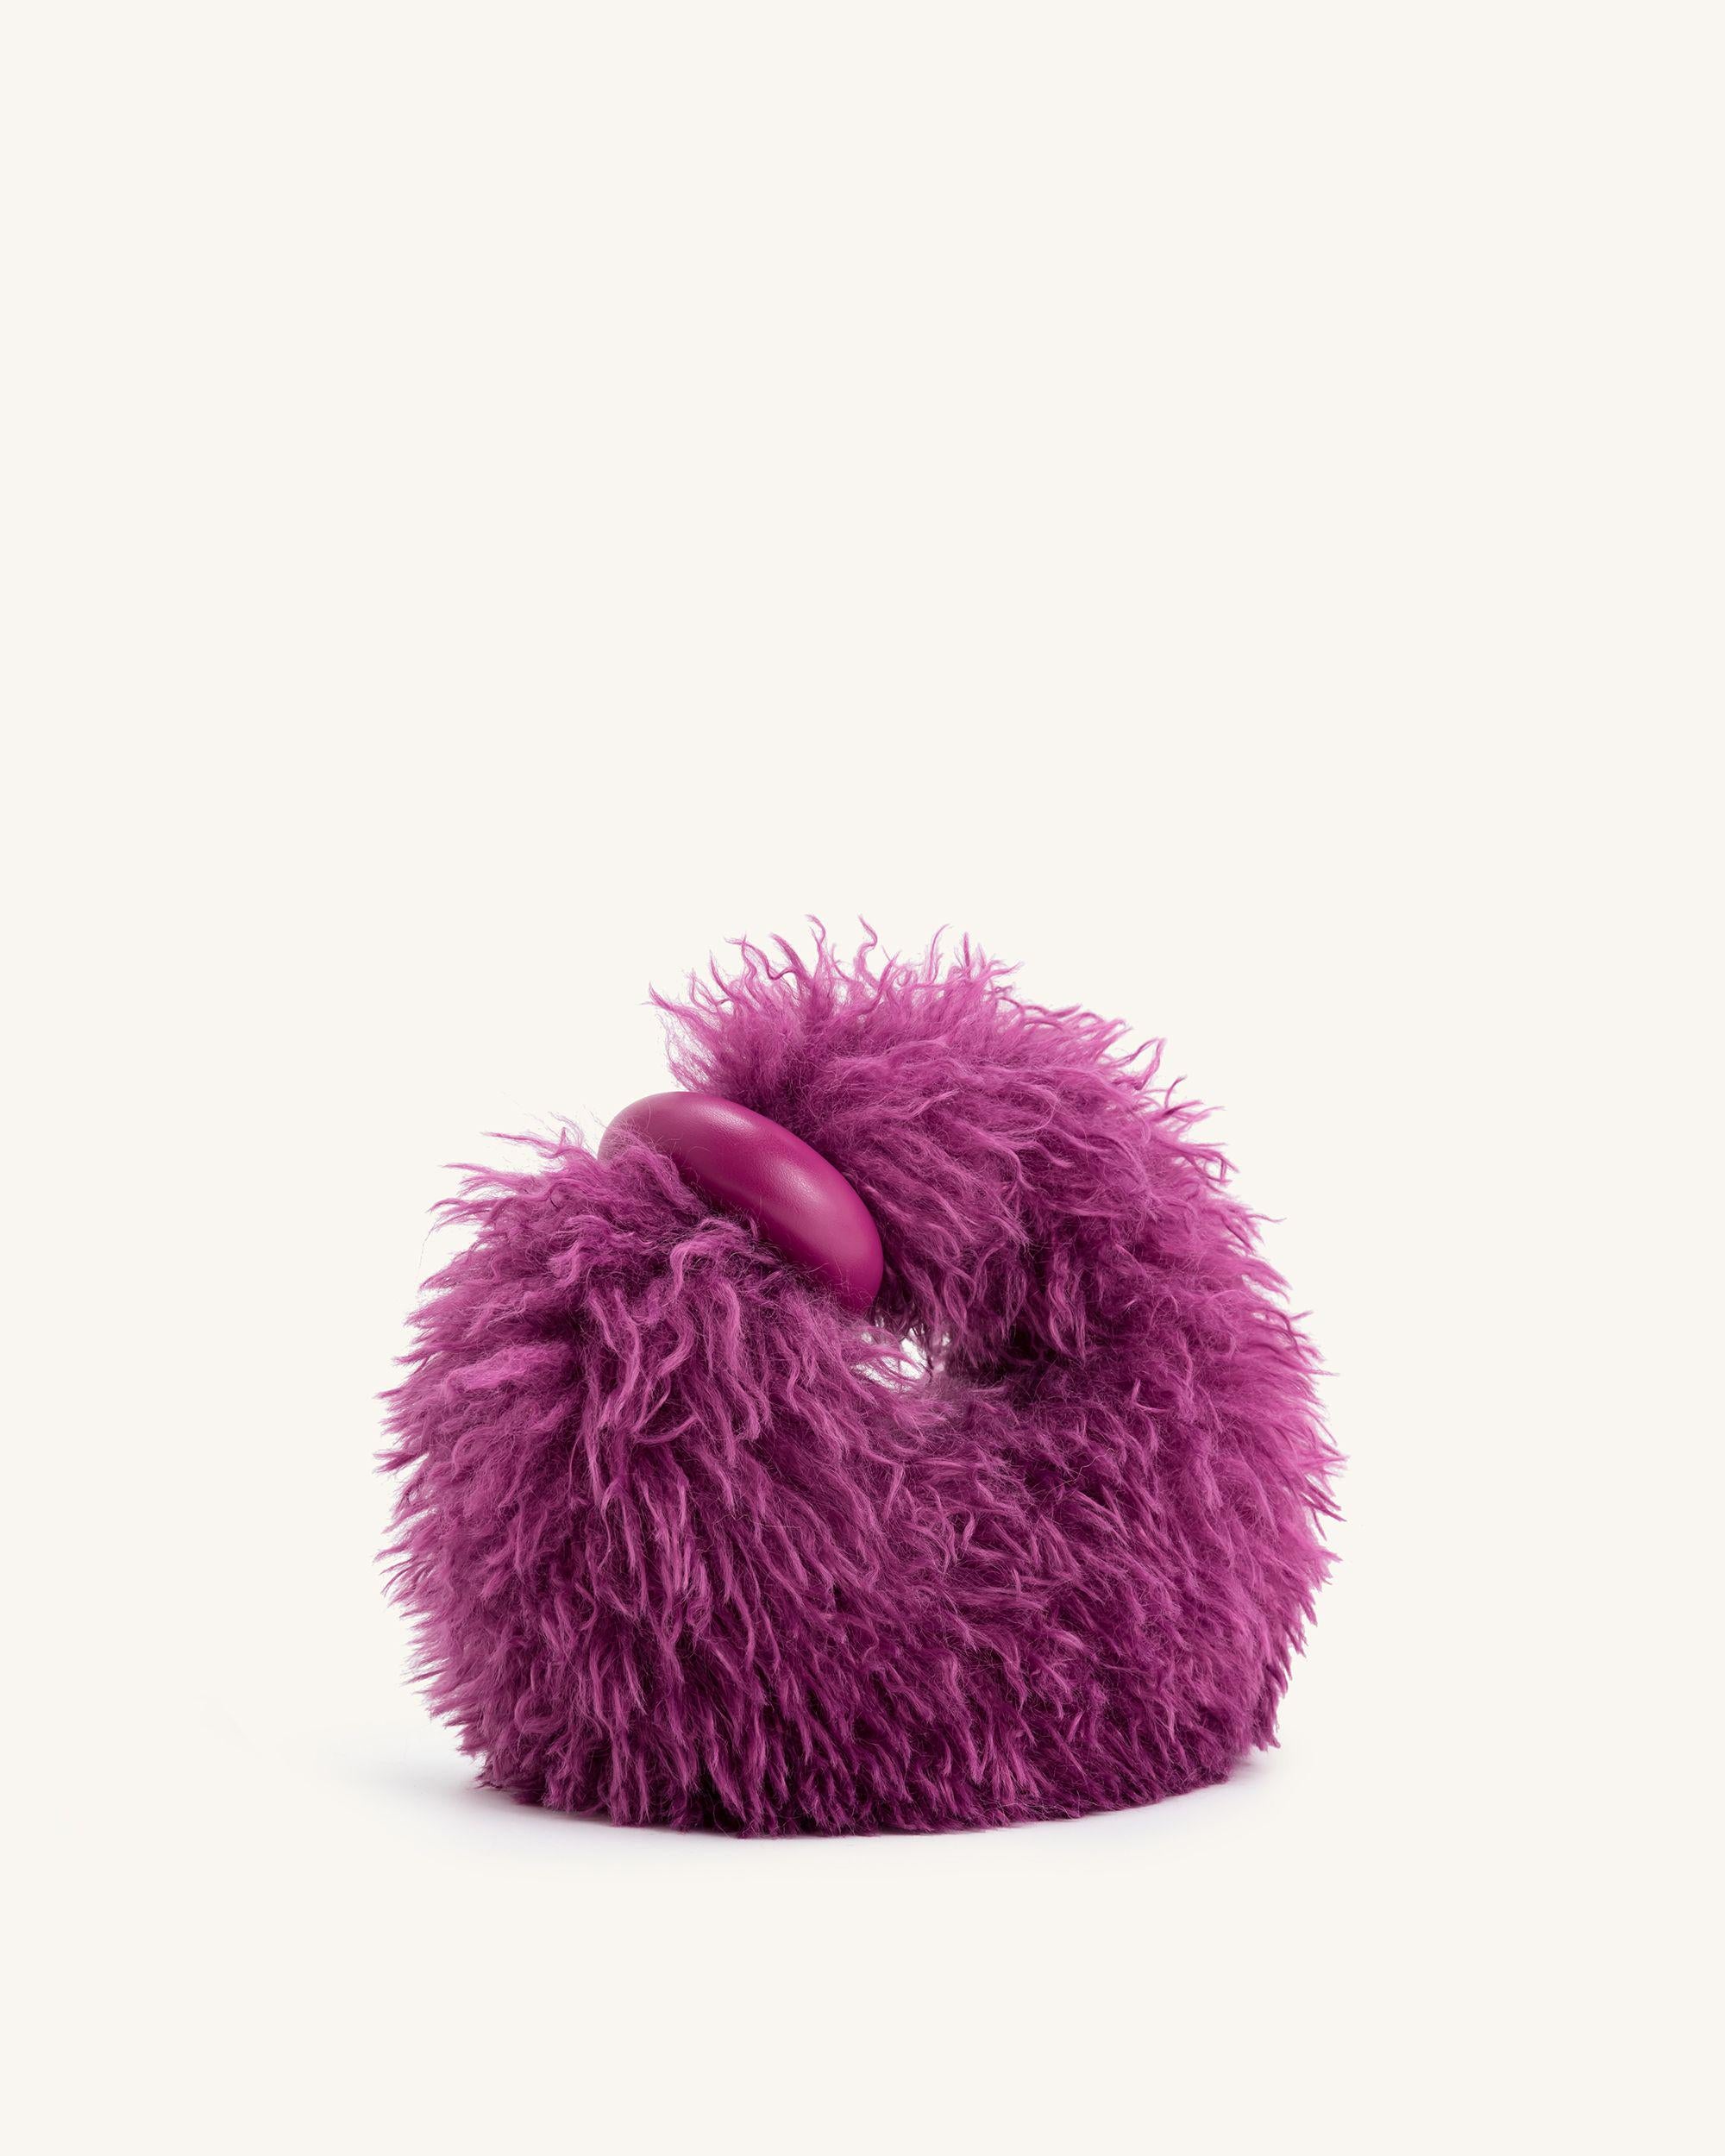 Abacus 人造毛皮迷你手提包 - 紫色